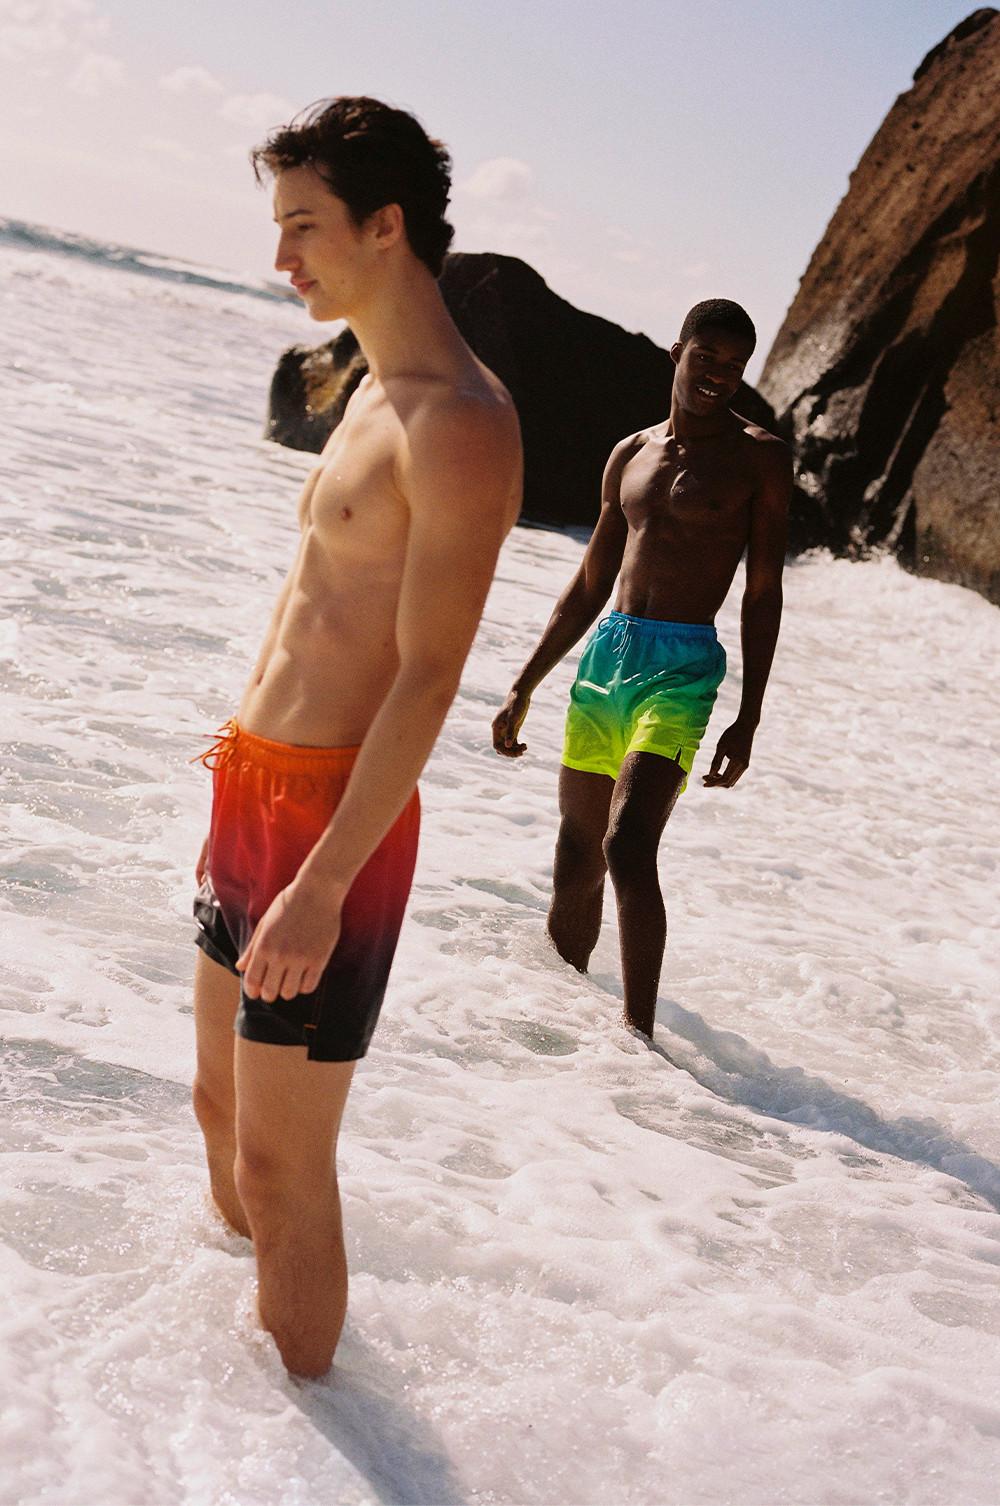 Beach shorts